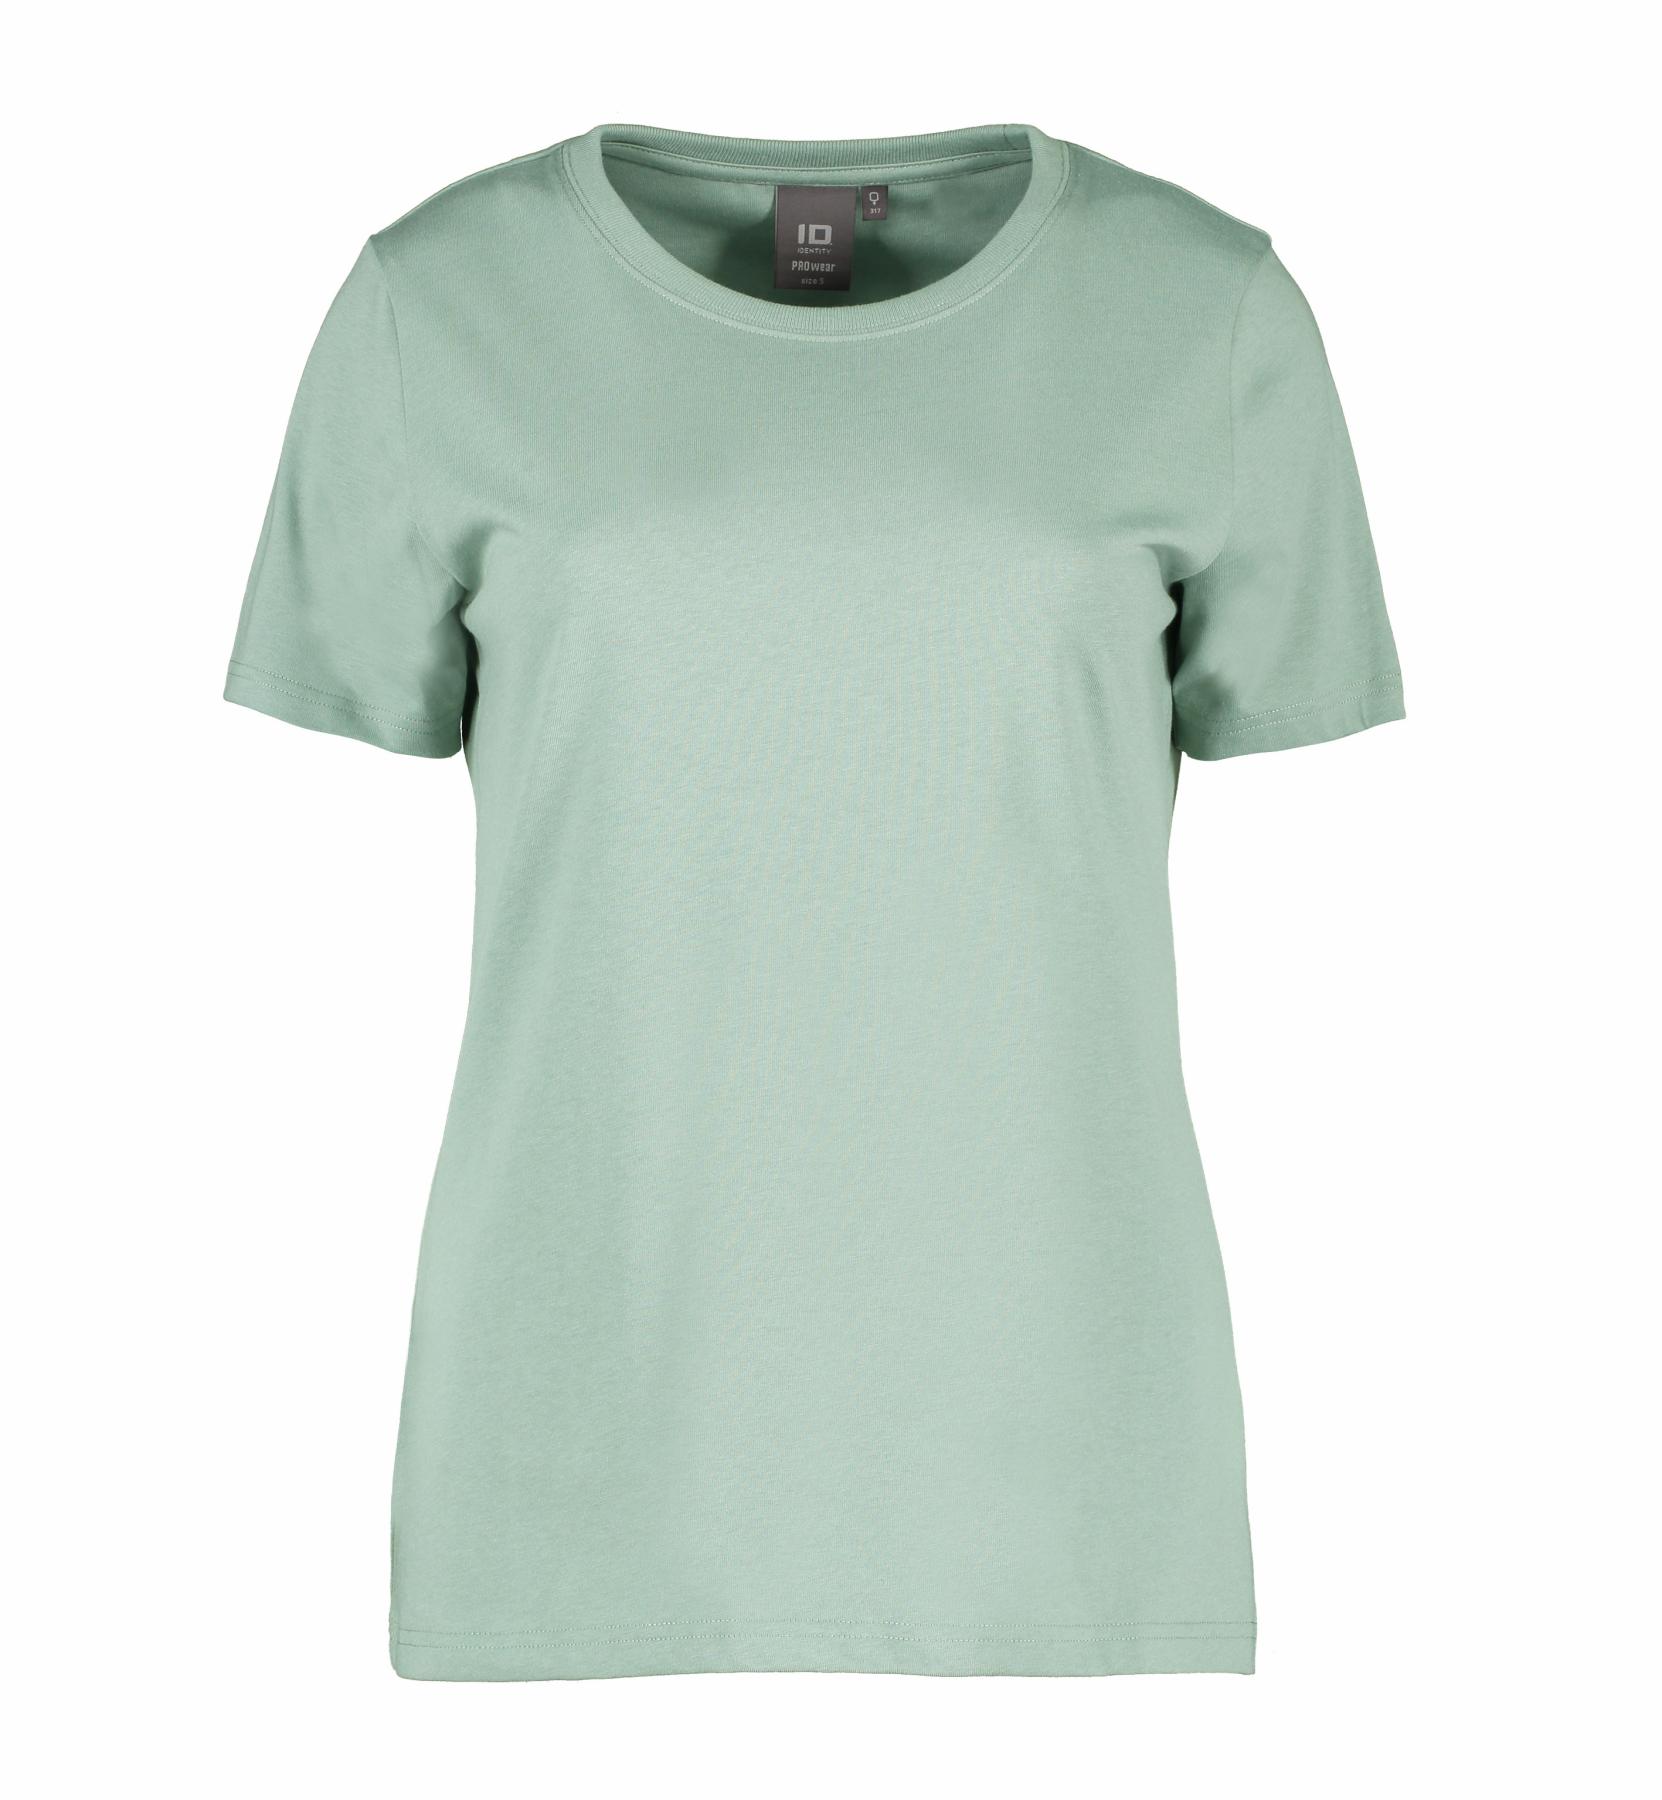 PRO Wear Damen Arbeits-T-Shirt 175 g/m² ID Identity® Alt-Grün M